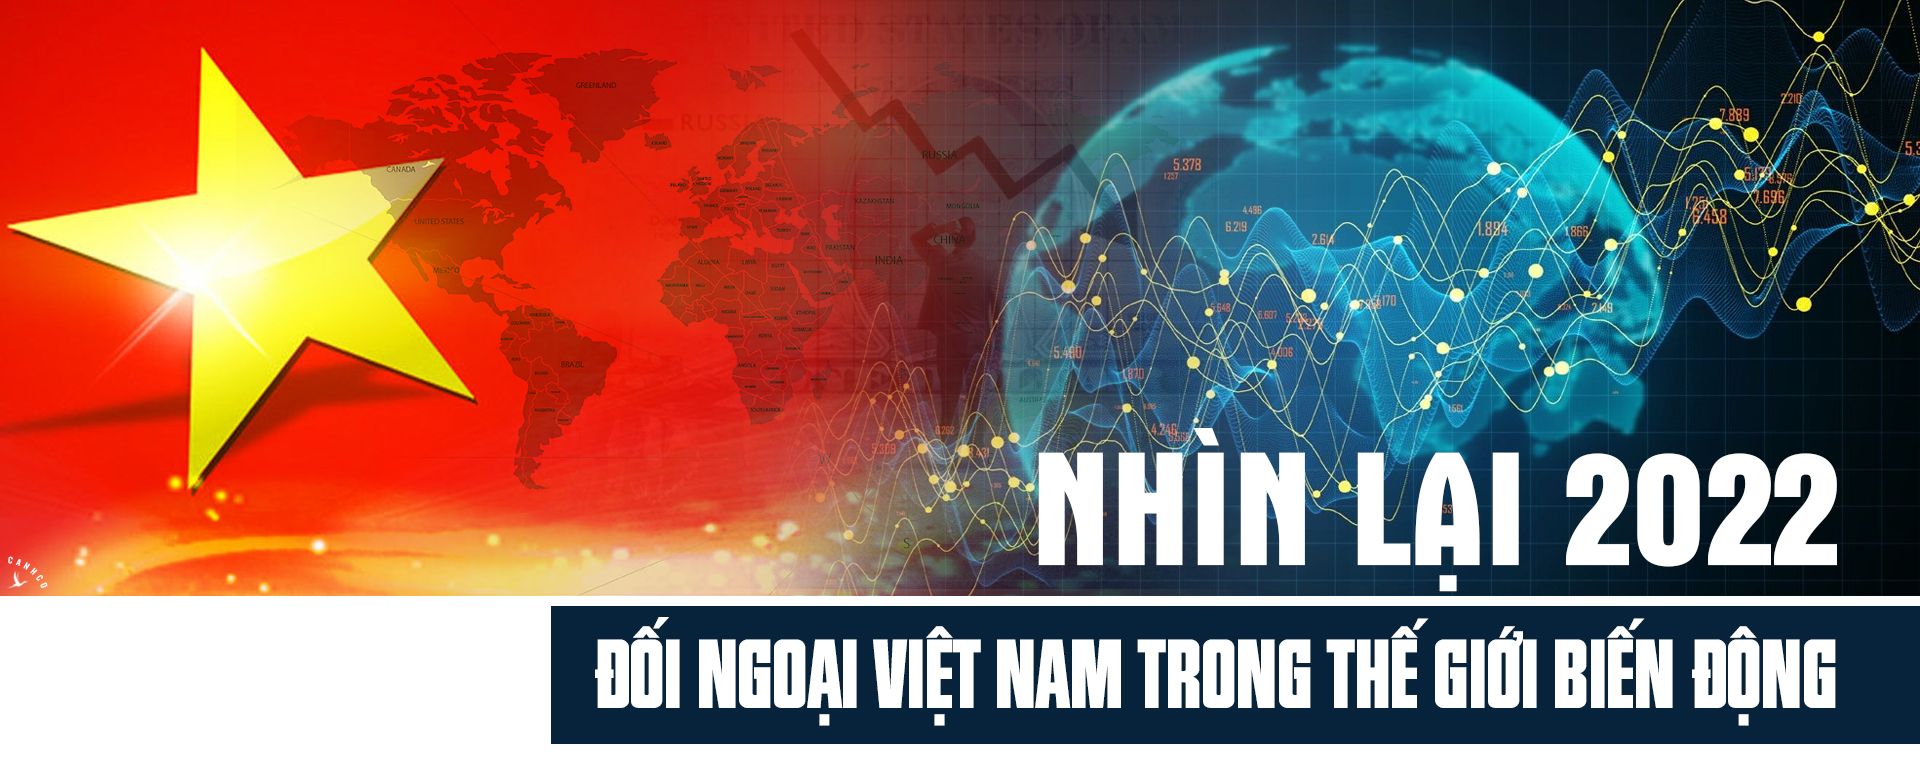 Nhìn lại 2022: Đối ngoại Việt Nam trong thế giới biến động